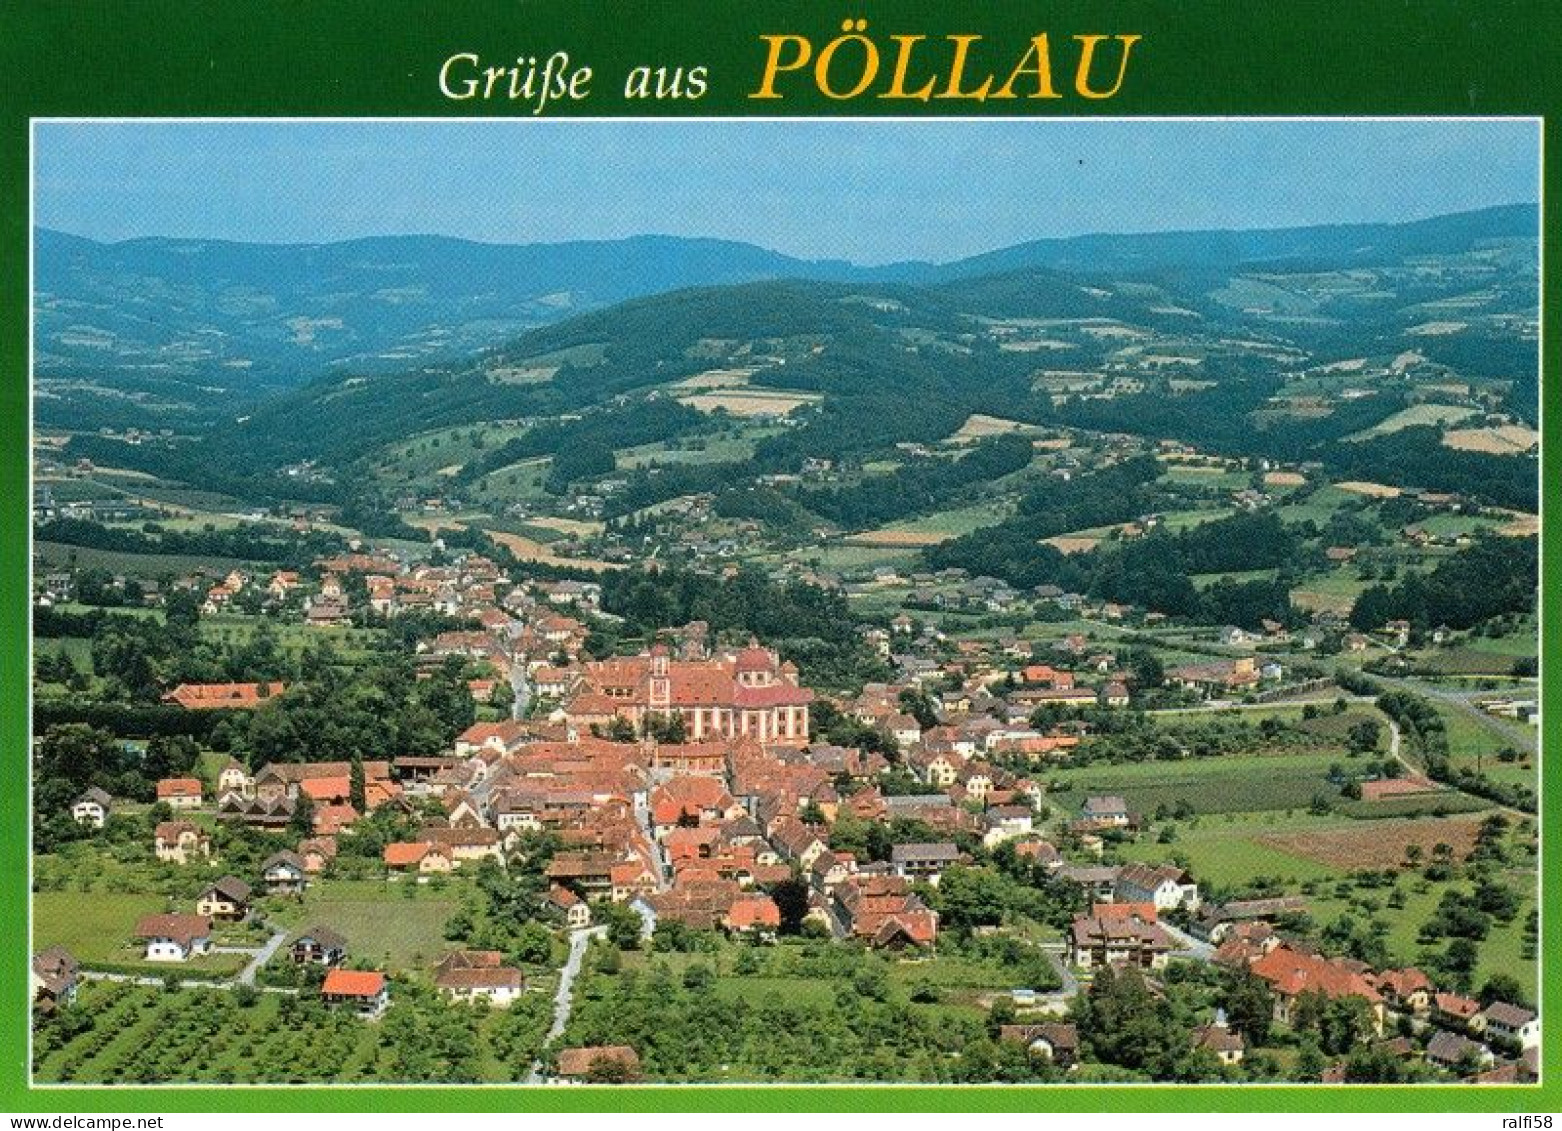 1 AK Österreich / Steiermark * Blick Auf Die Marktgemeinde Pöllau - Luftbildaufnahme * - Pöllau